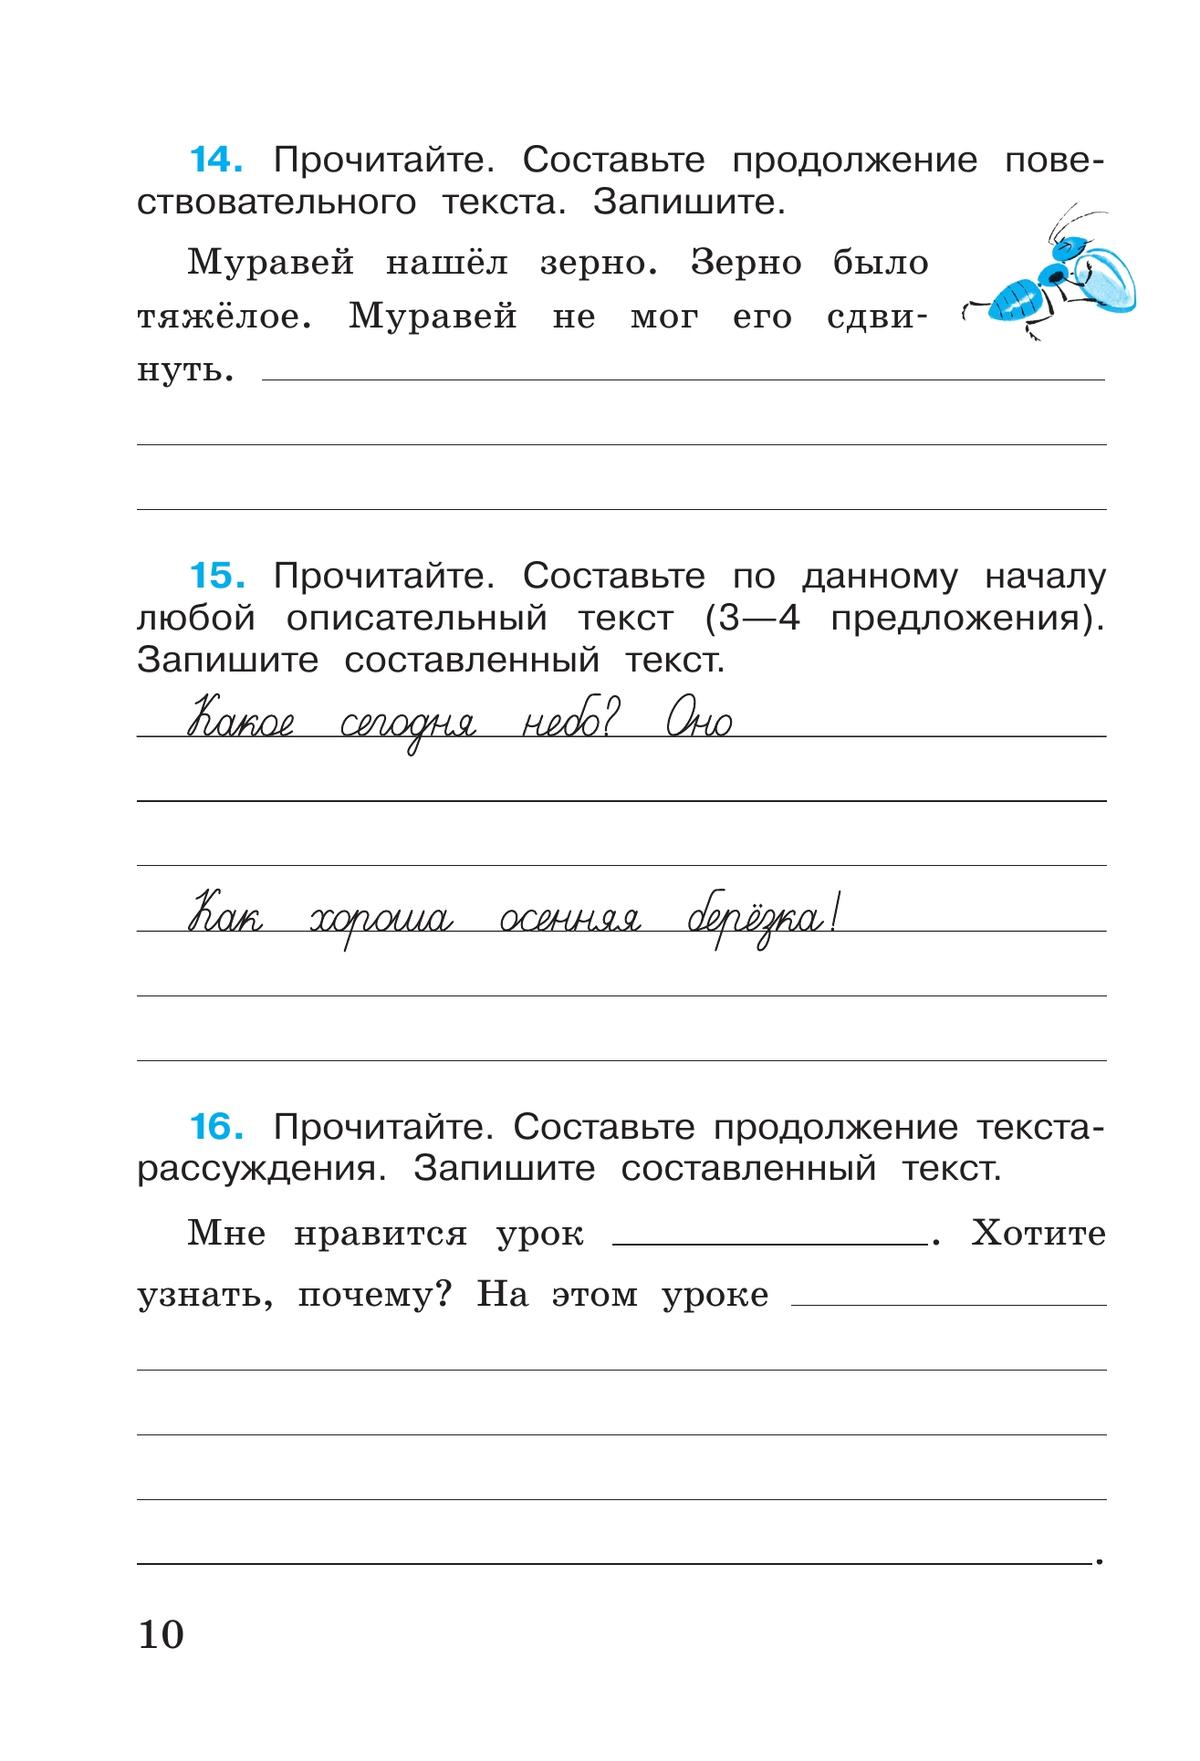 Русский язык. Рабочая тетрадь. 4 класс. В 2 частях. Часть 1 3